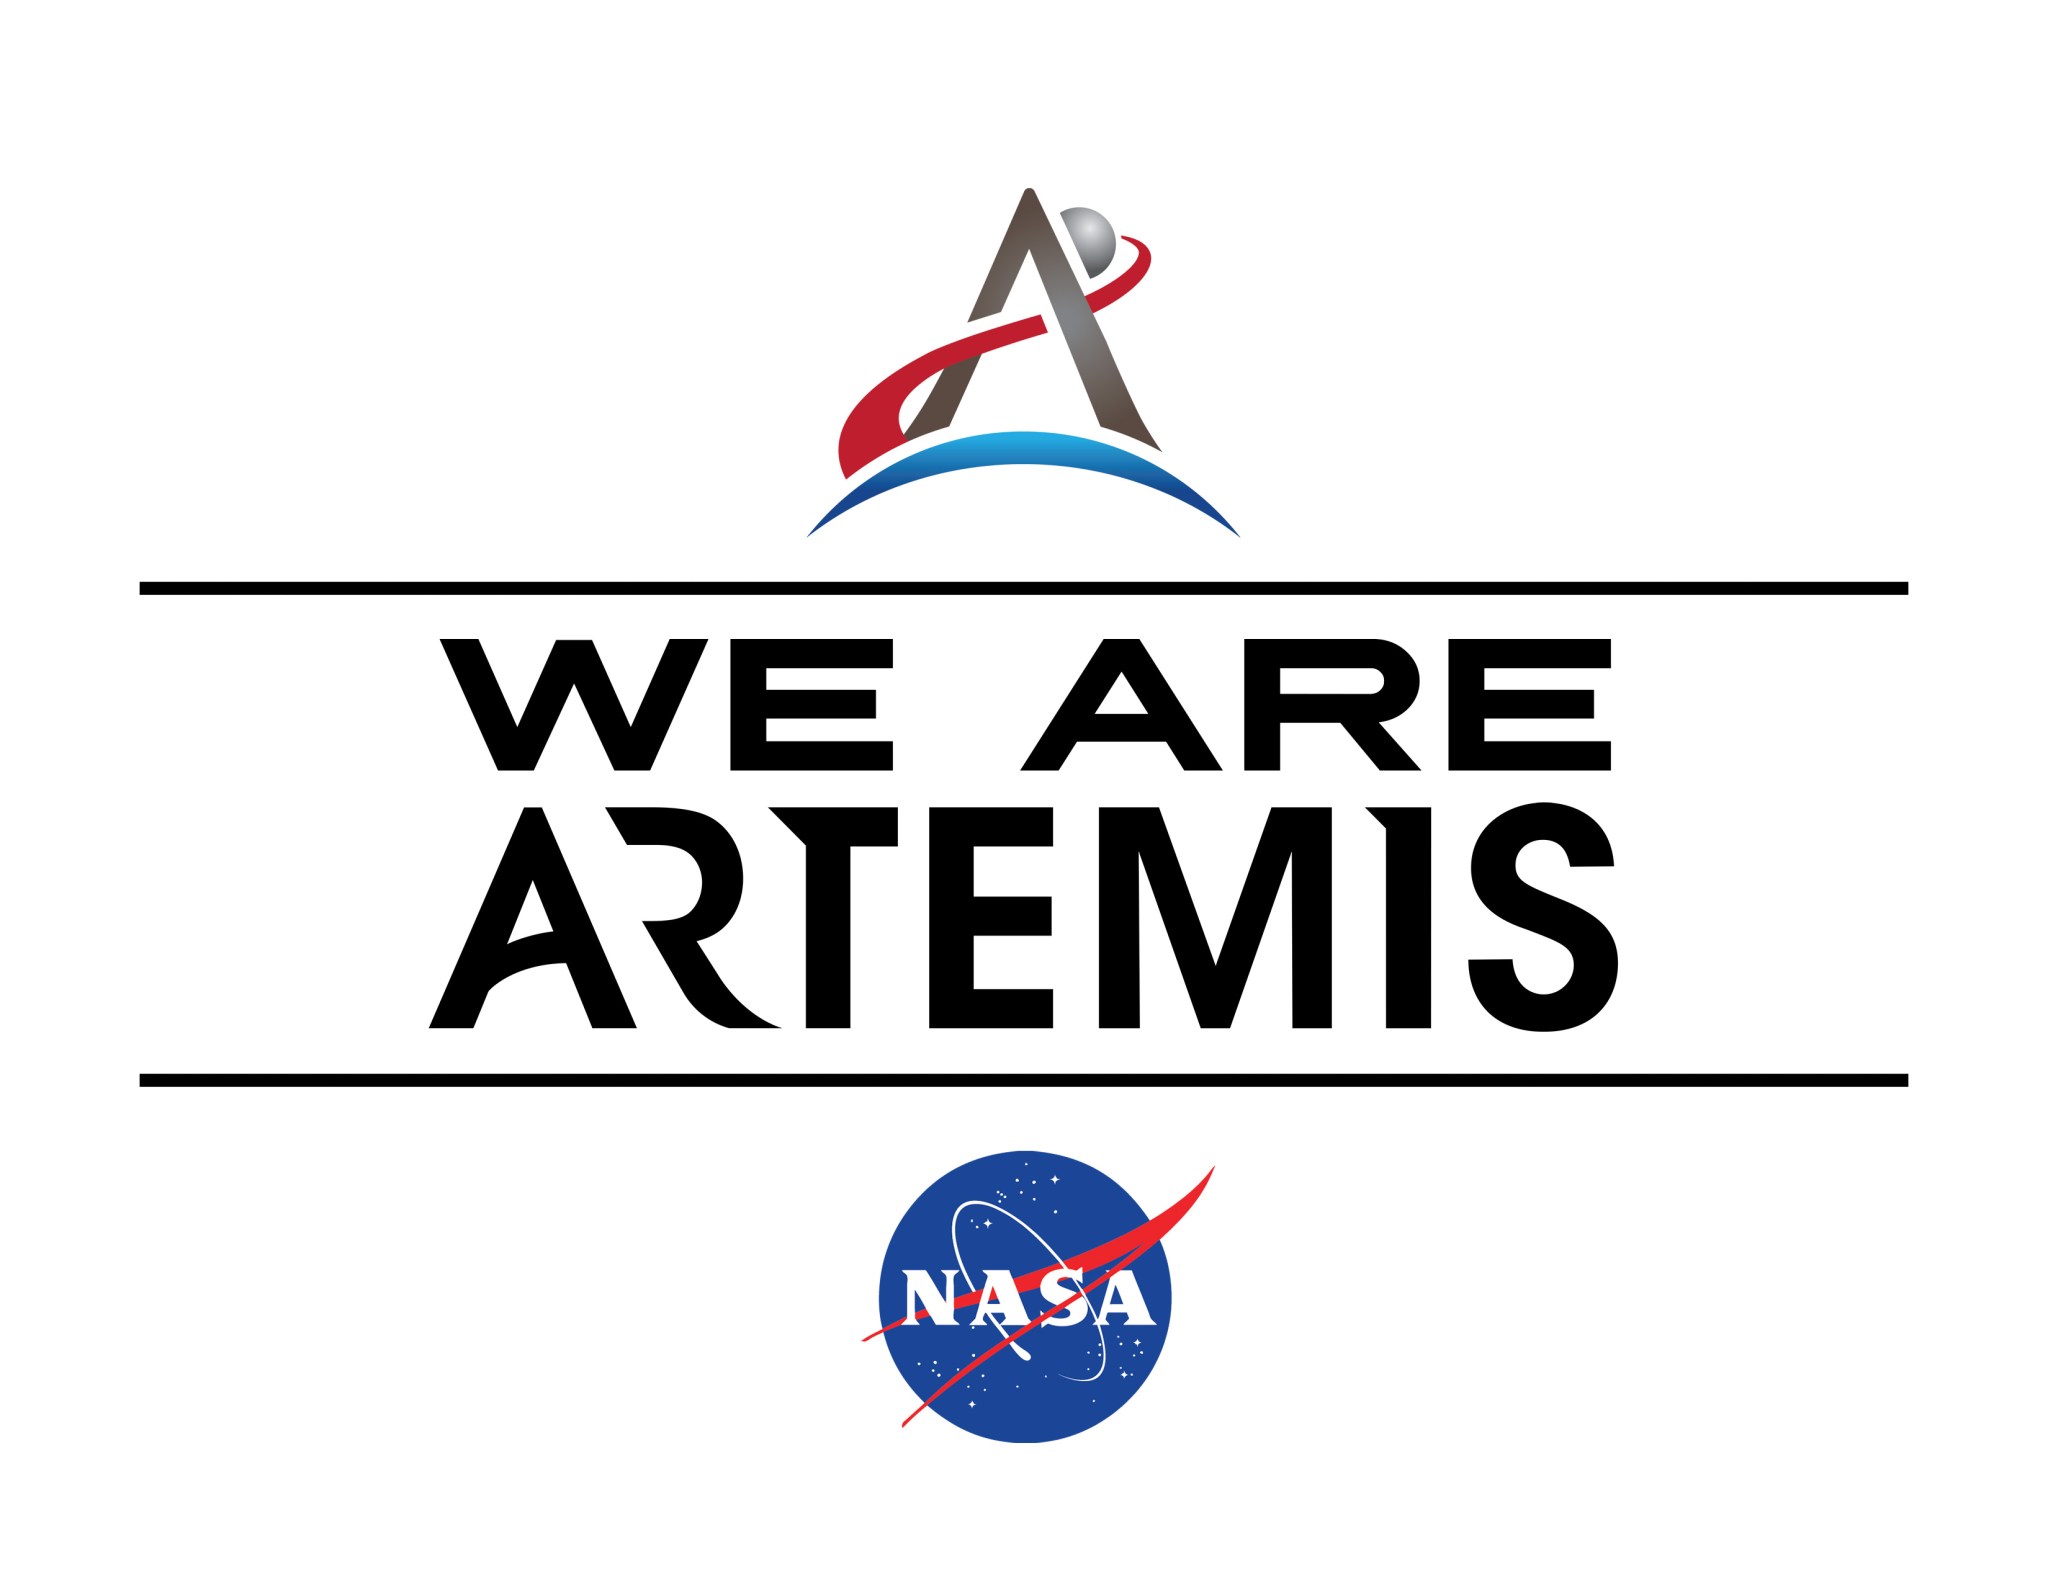 We Are Artemis graphic.